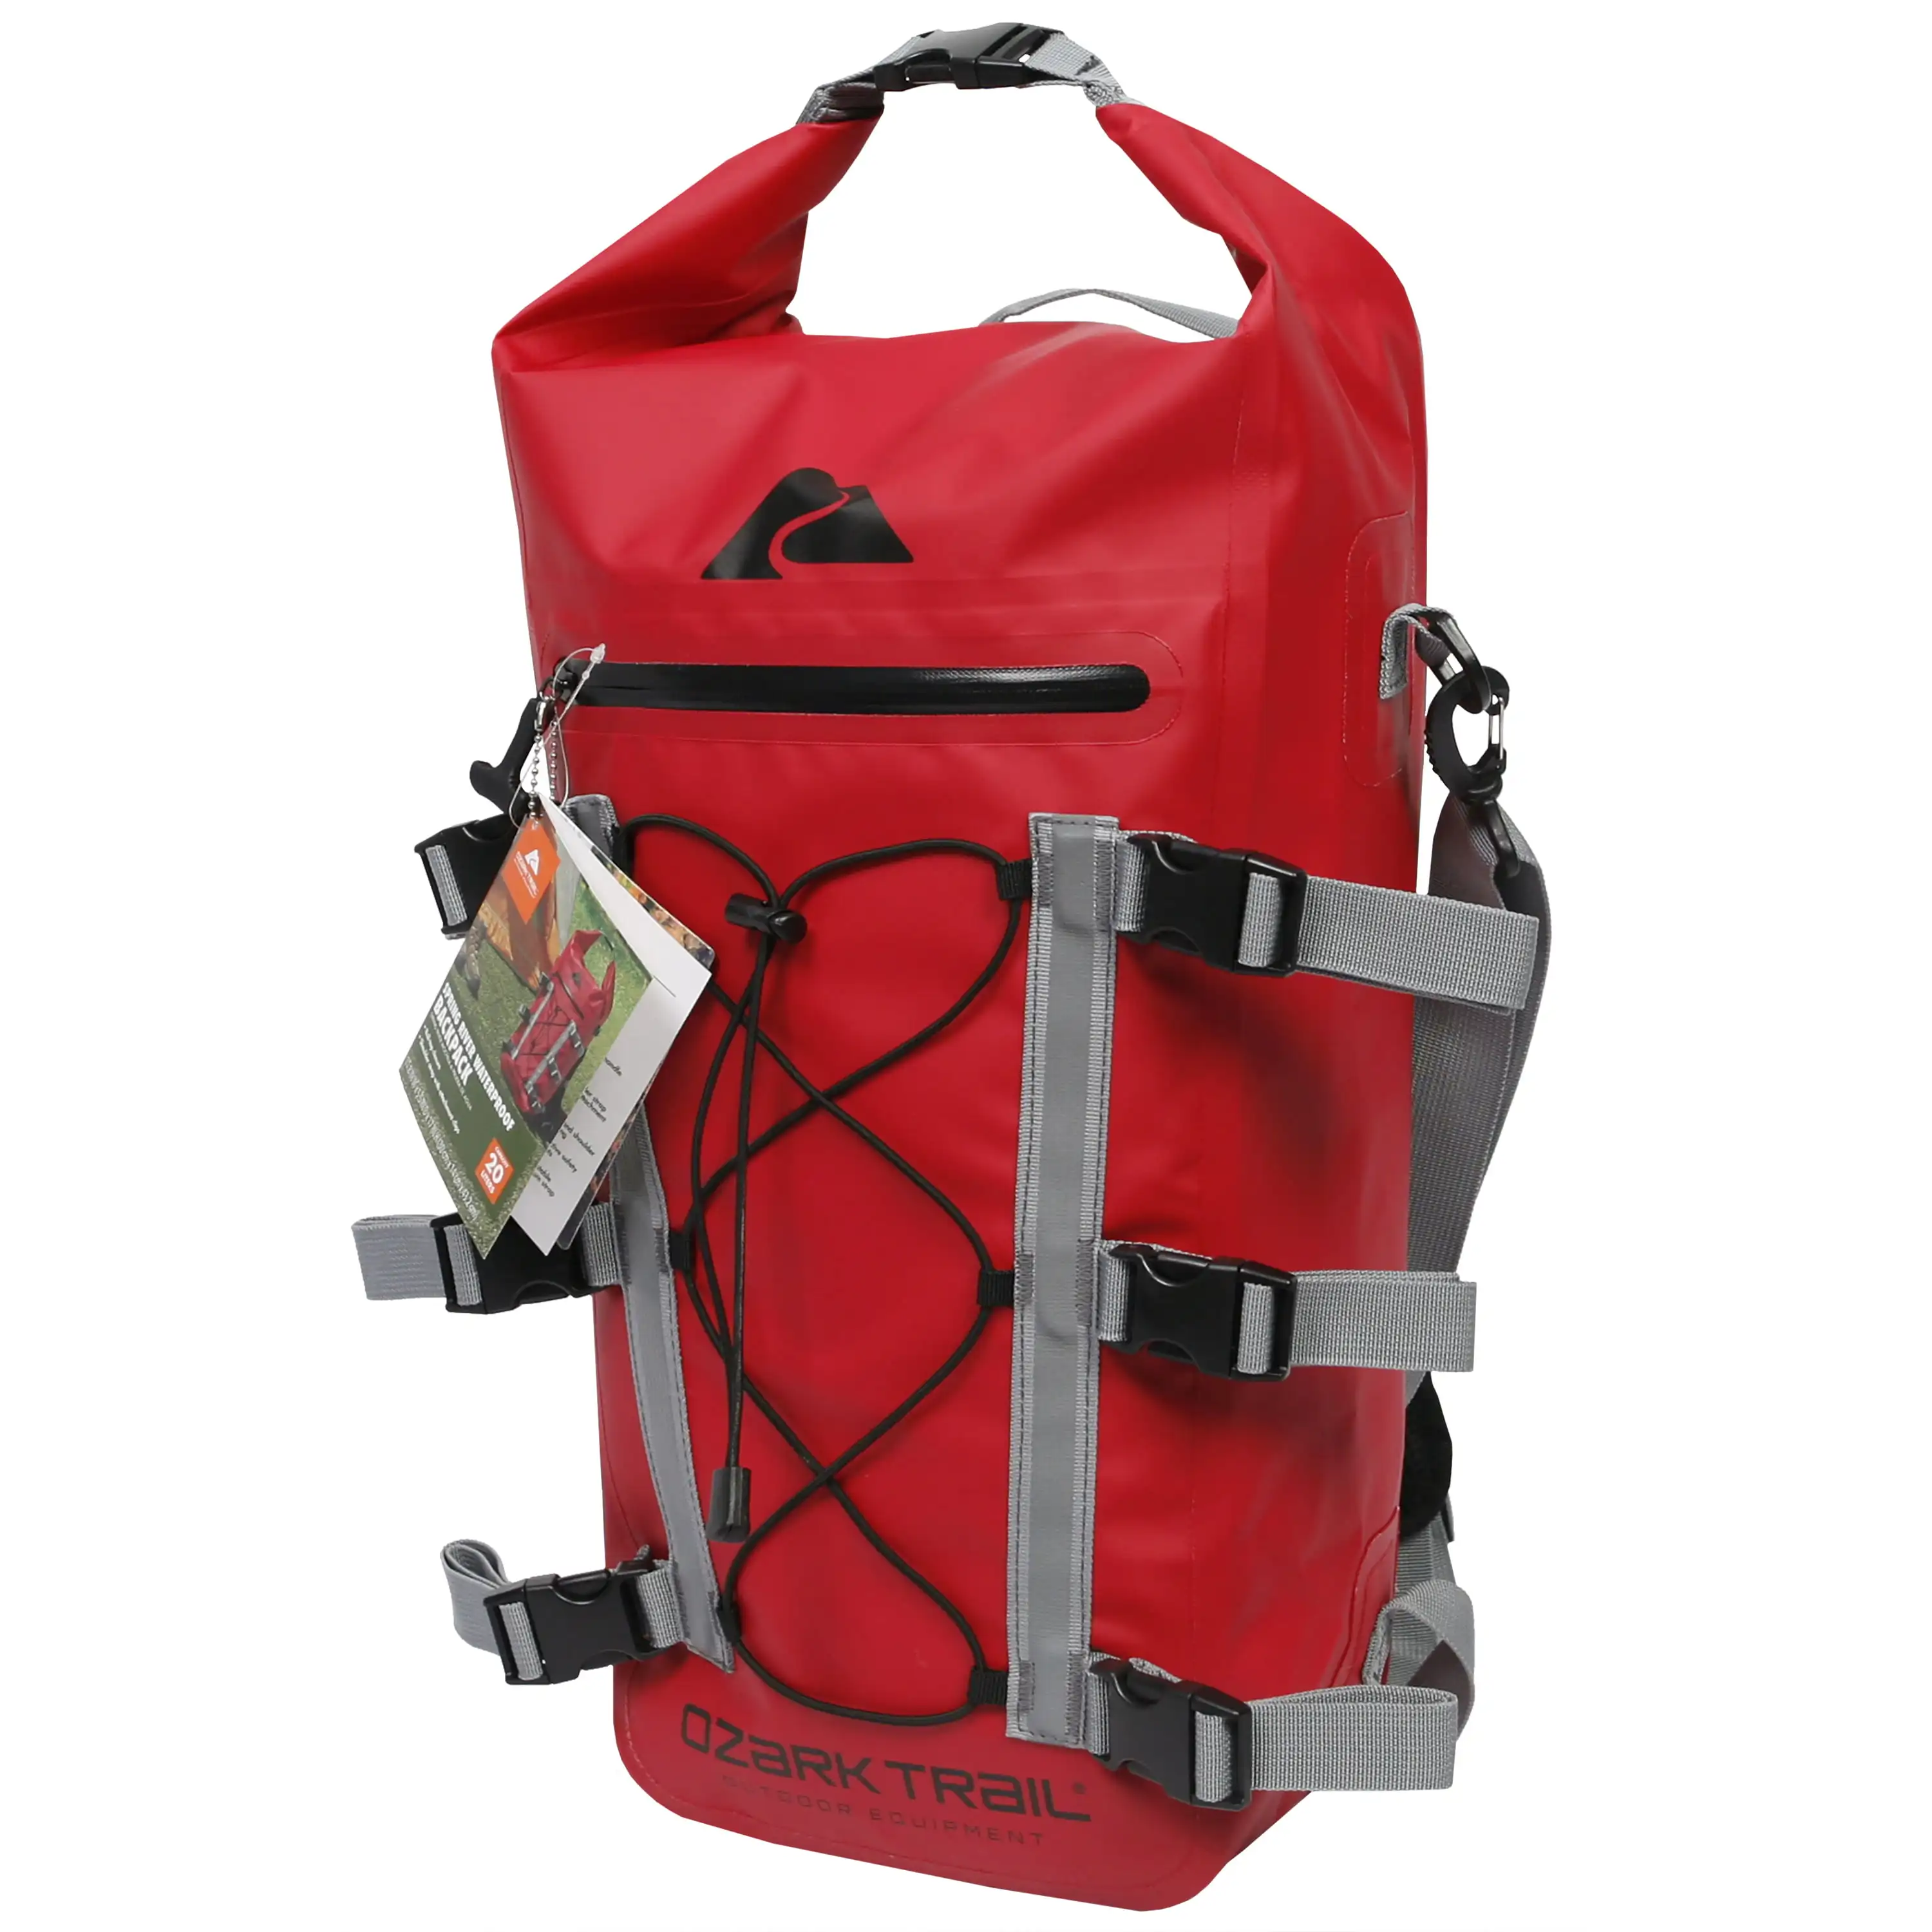 Spring River Waterproof Roll Top Kayak Backpack, Red